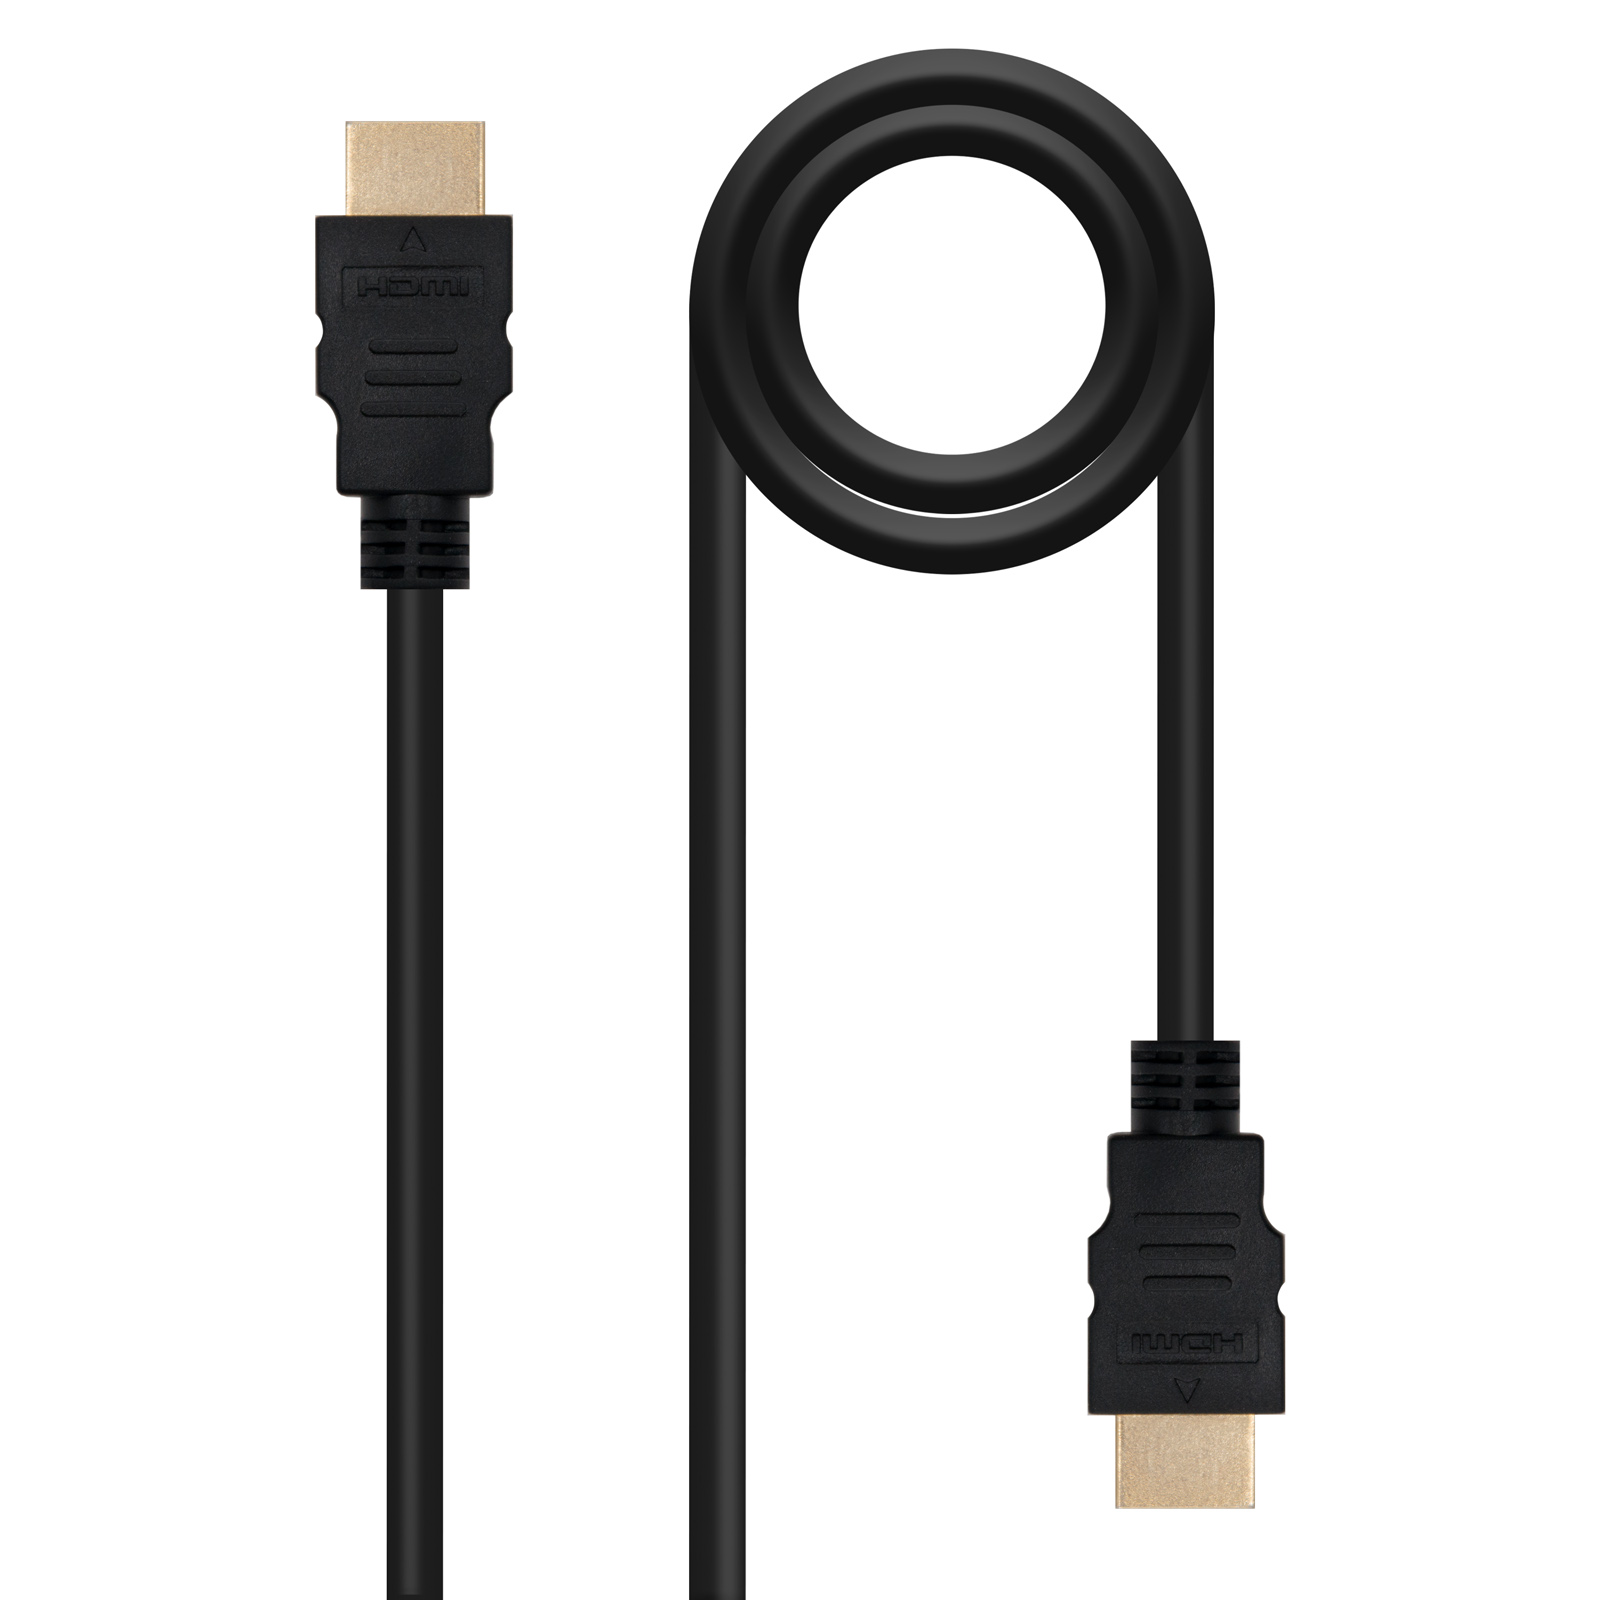 Nanocable Cable HDMI V1.4 (Alta Velocidad/Hec) A/M-A/M 1.0m - Color Negro